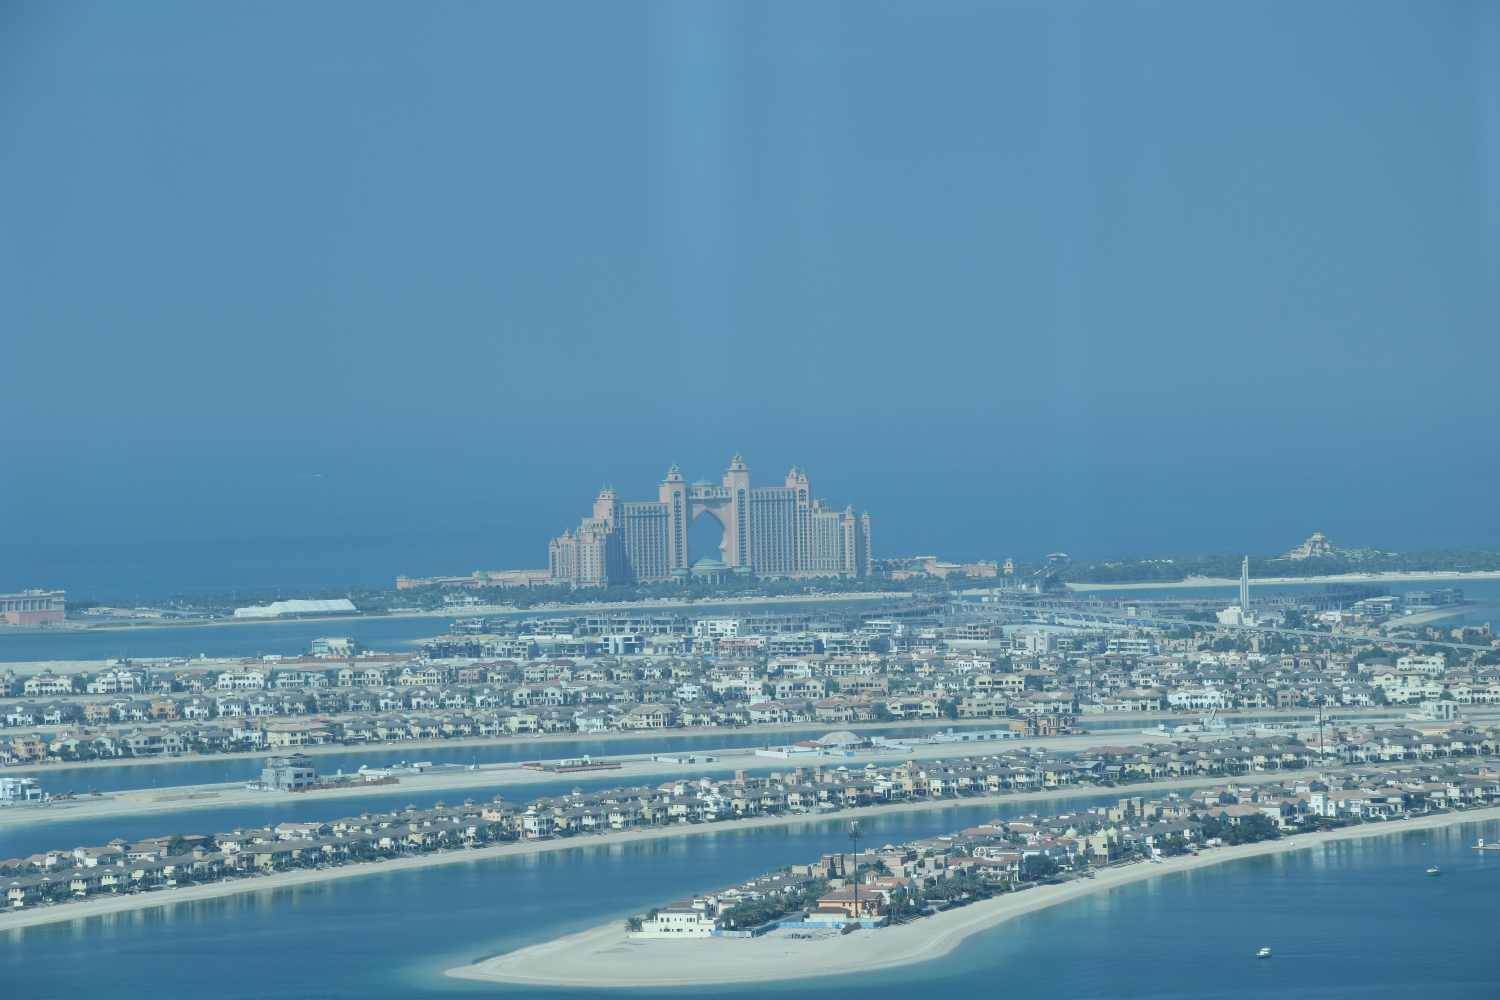 Cruceros Dubai -Emiratos A.U., Golfo Persico - Foro Cruceros